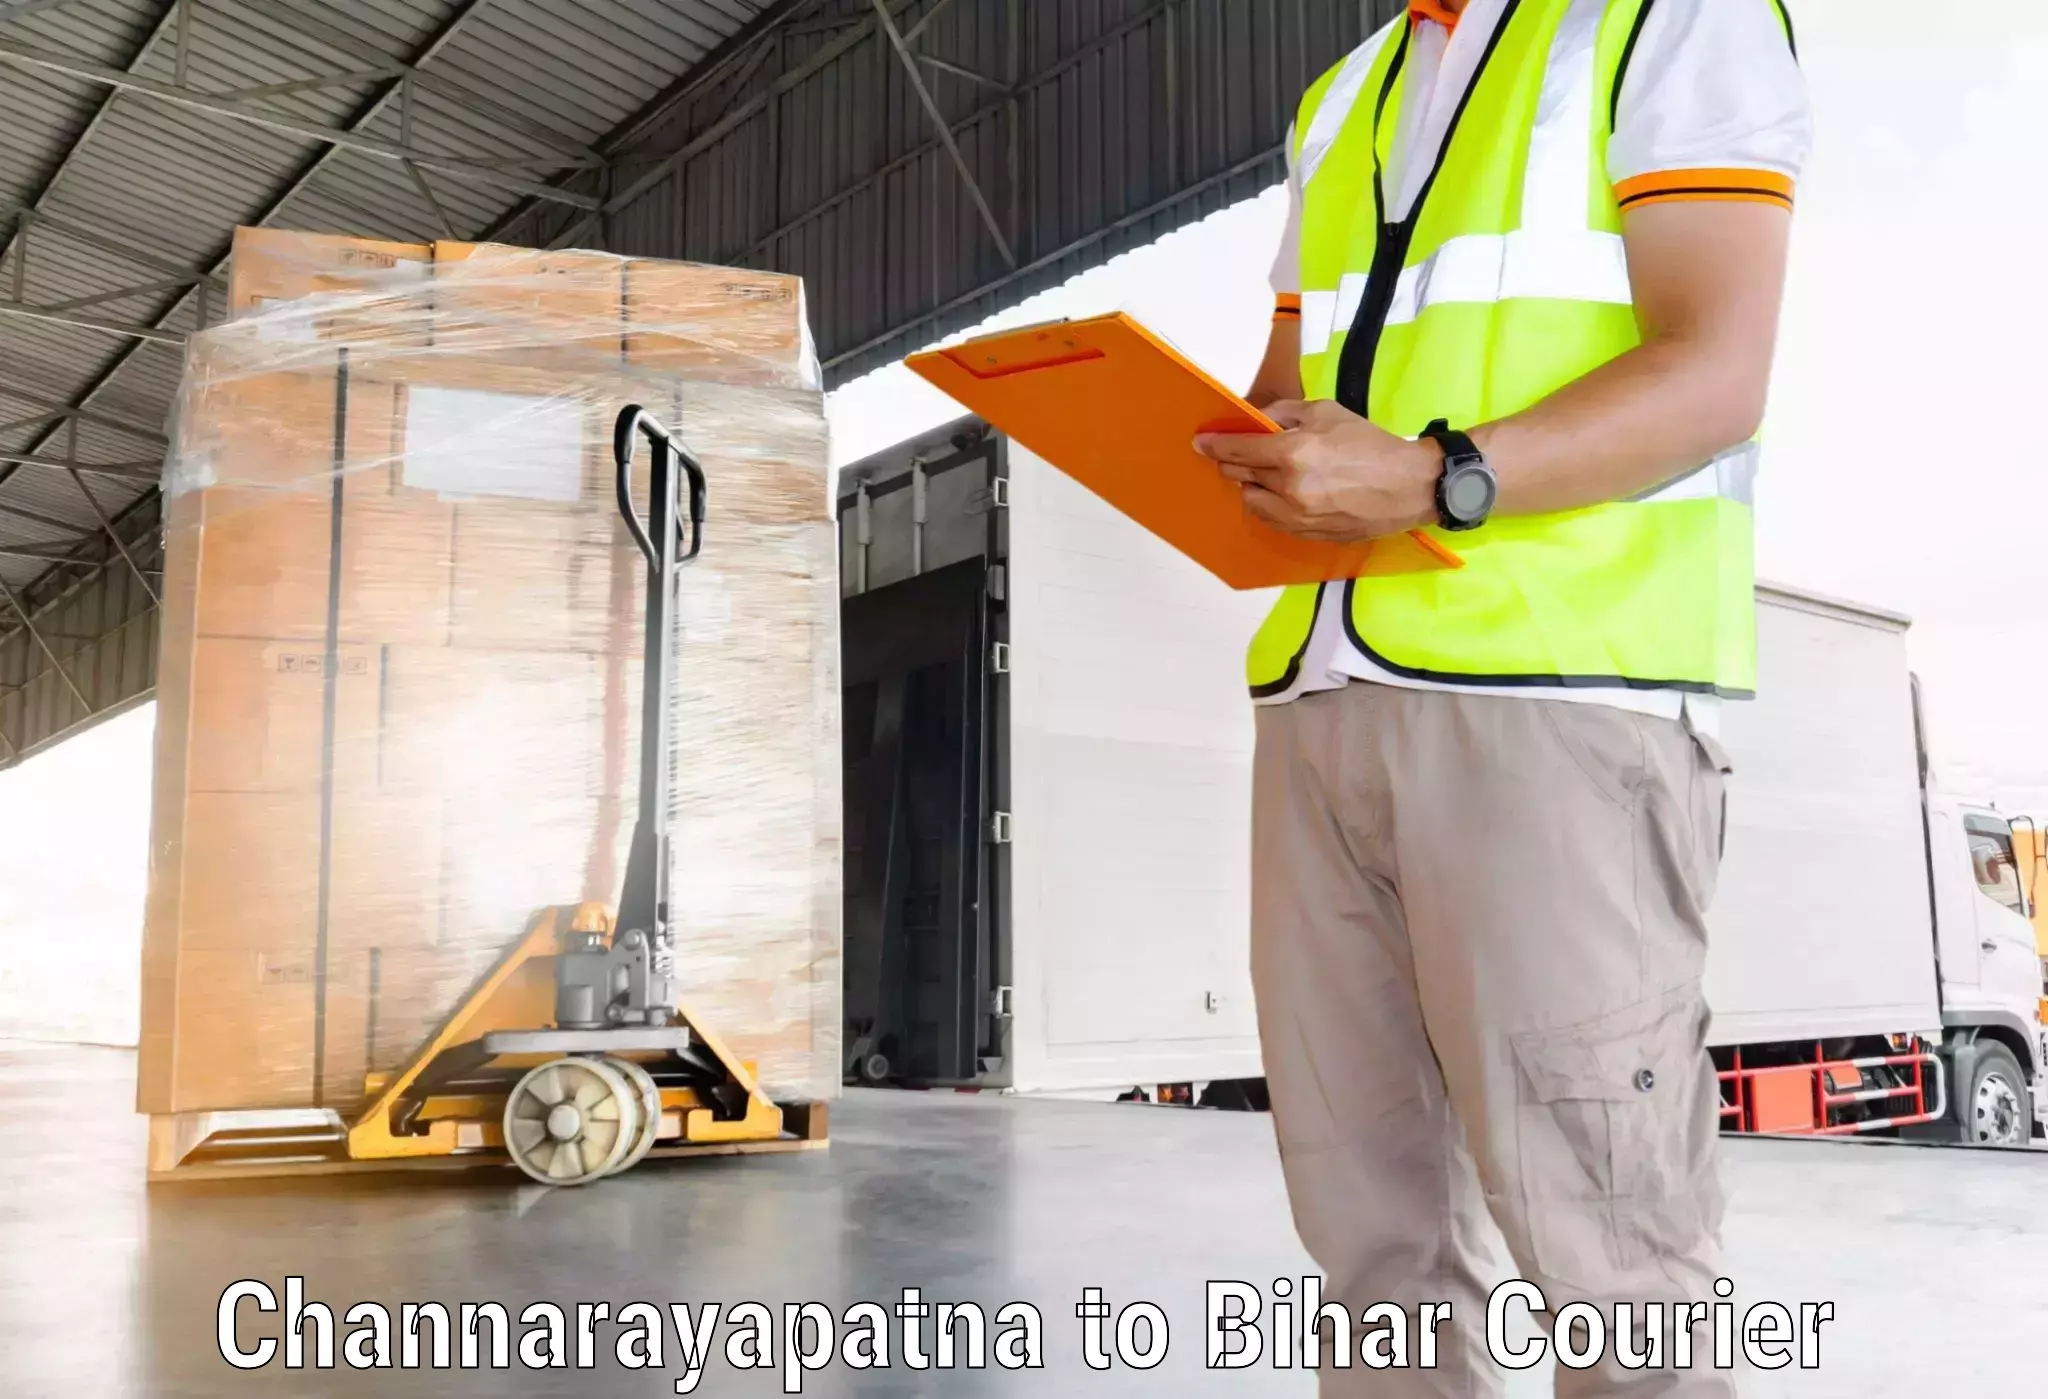 Professional courier handling Channarayapatna to Malmaliya